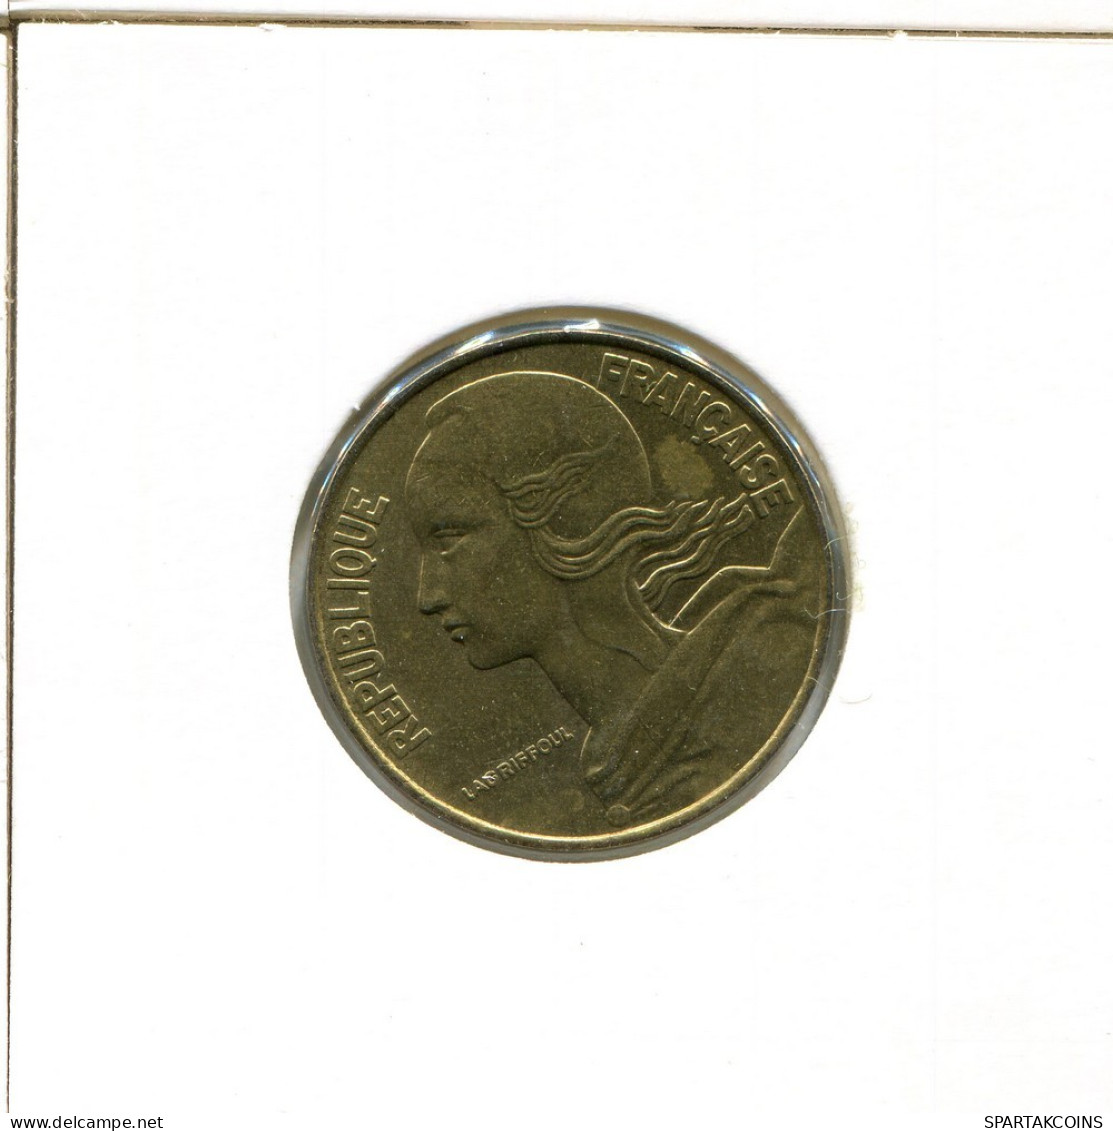 20 CENTIMES 1986 FRANKREICH FRANCE Französisch Münze #BA895.D.A - 20 Centimes